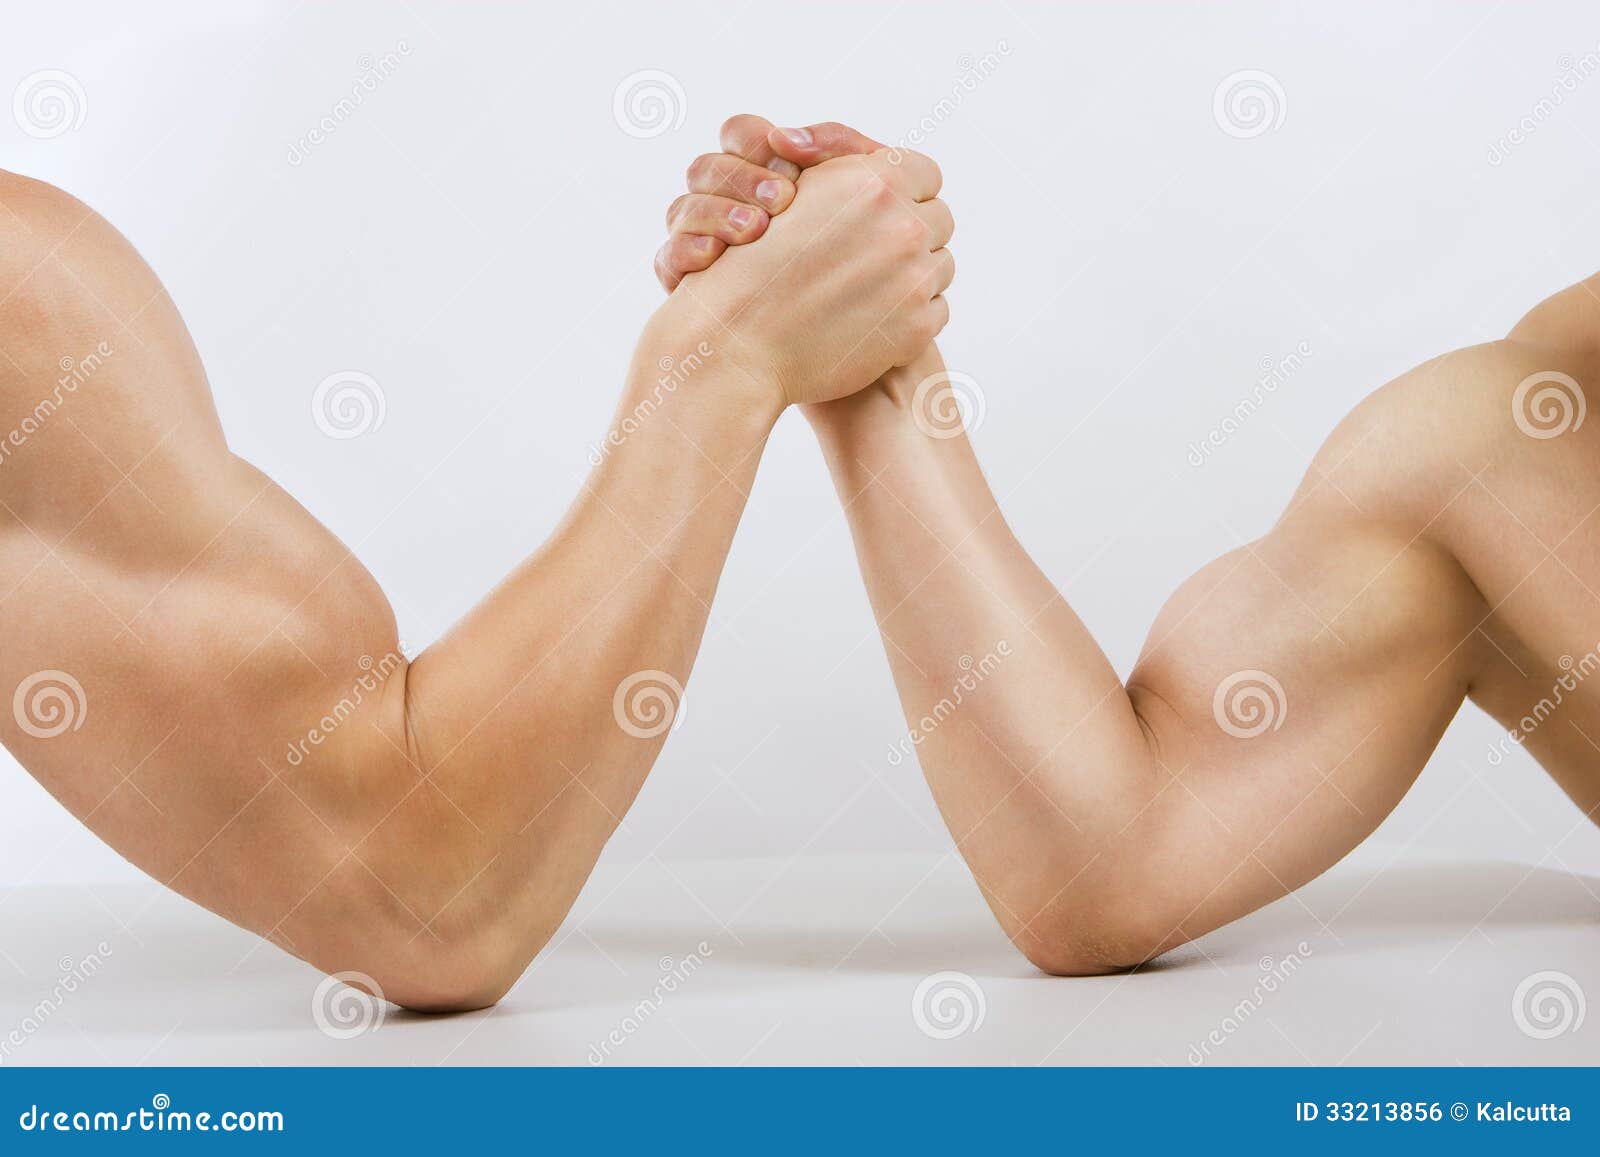 Luta romana de braço muscular de duas mãos. Duas mãos musculares abraçaram a luta romana de braço